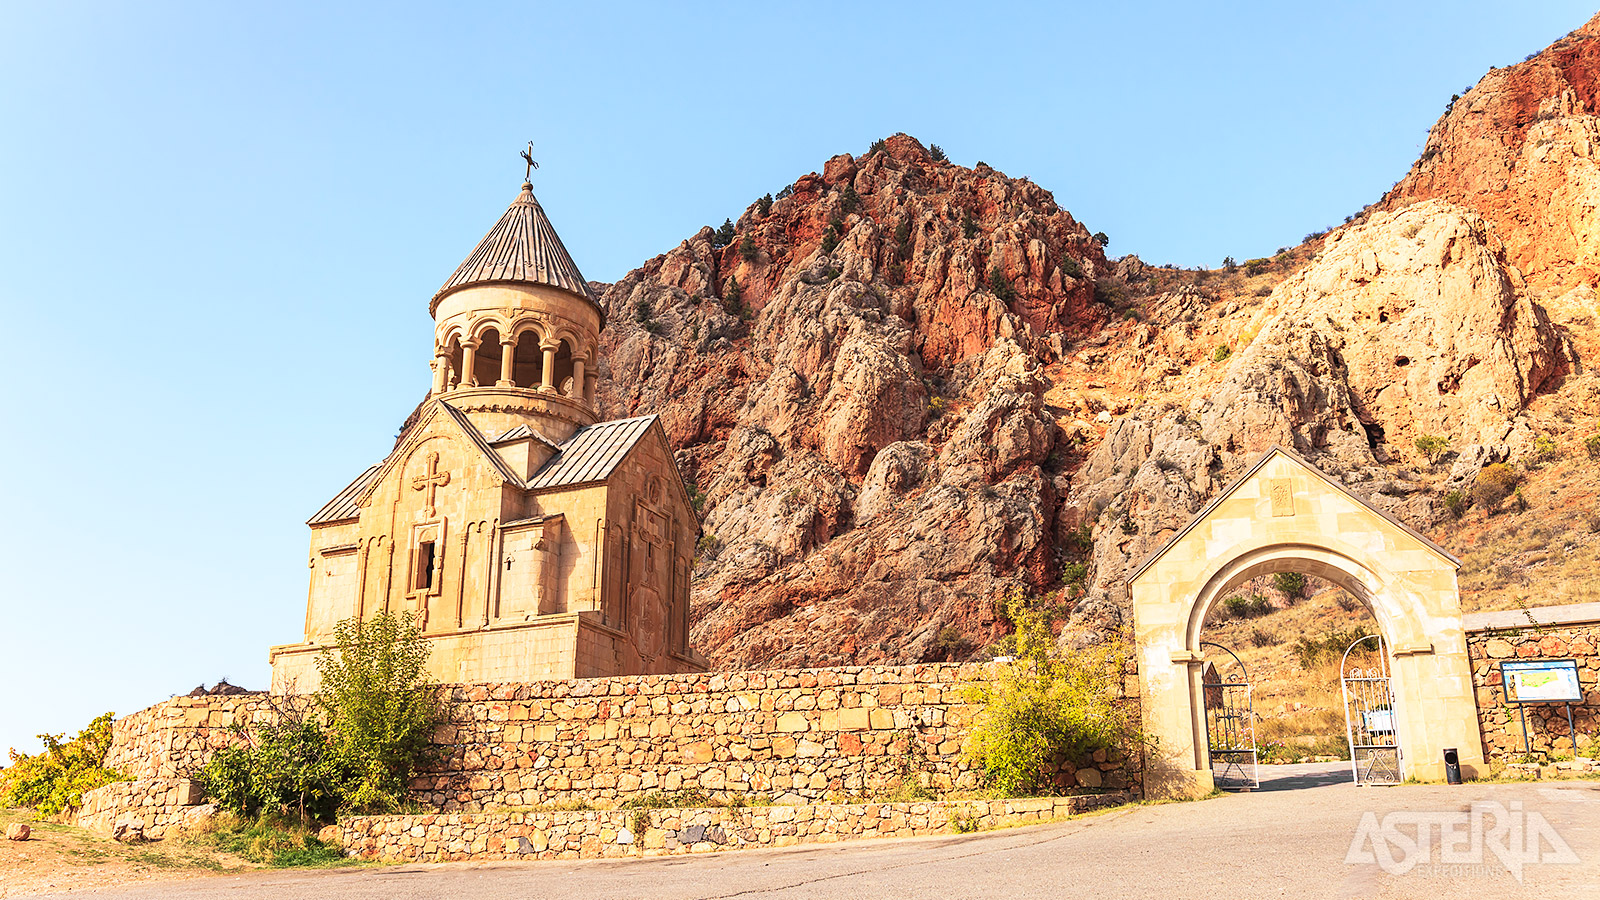 Het Noravank klooster wordt beschermd door een omwalling en 2 kerken met 2 verdiepingen, typisch voor de 13de eeuwse Armeense architectuur